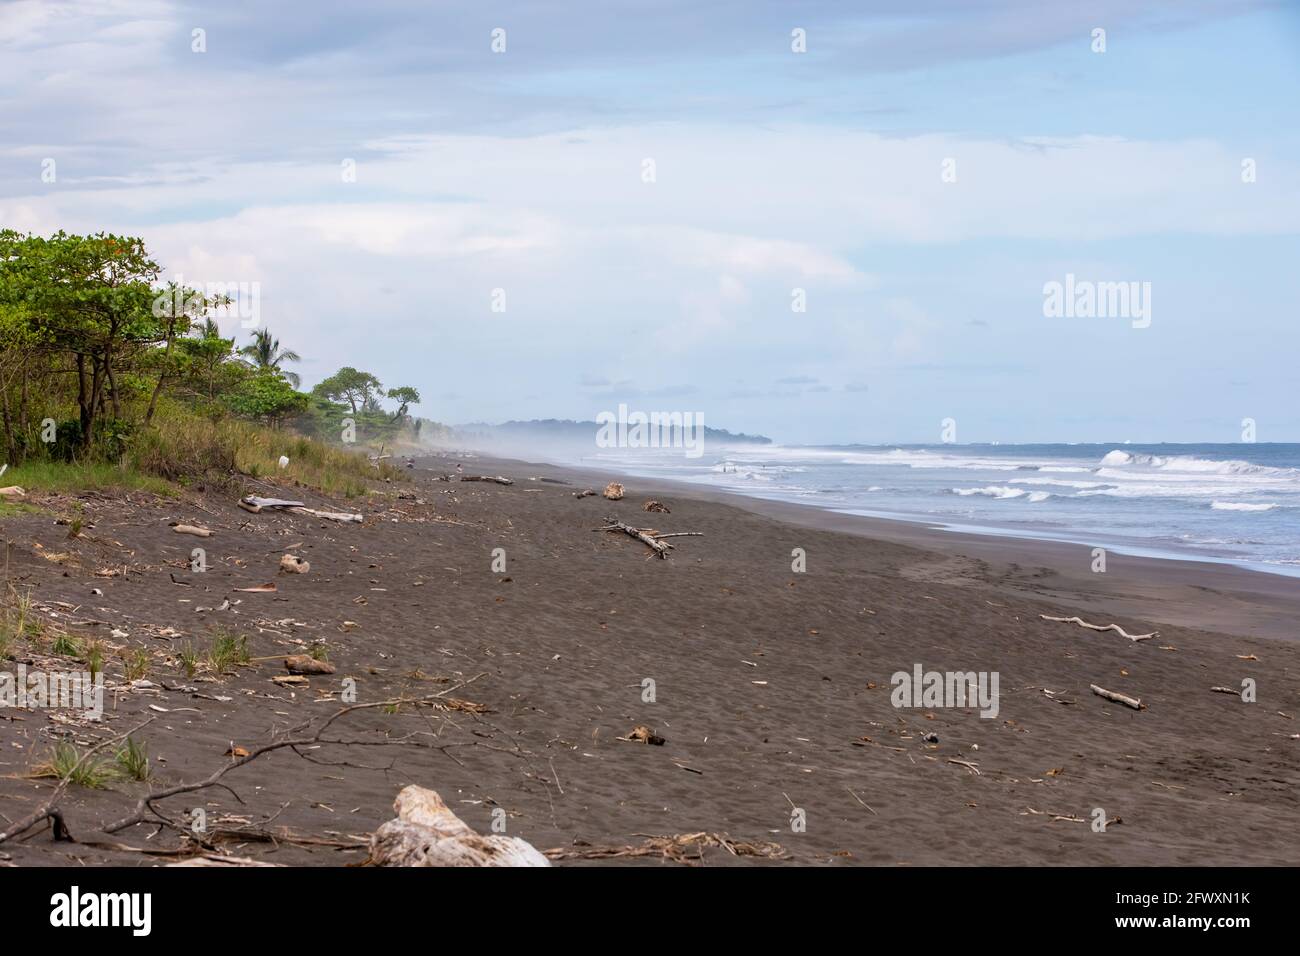 Vista de la playa negra volcánica y de las olas del océano Pacífico en Playa Hermosa en North Puntarenas, Costa Rica Foto de stock